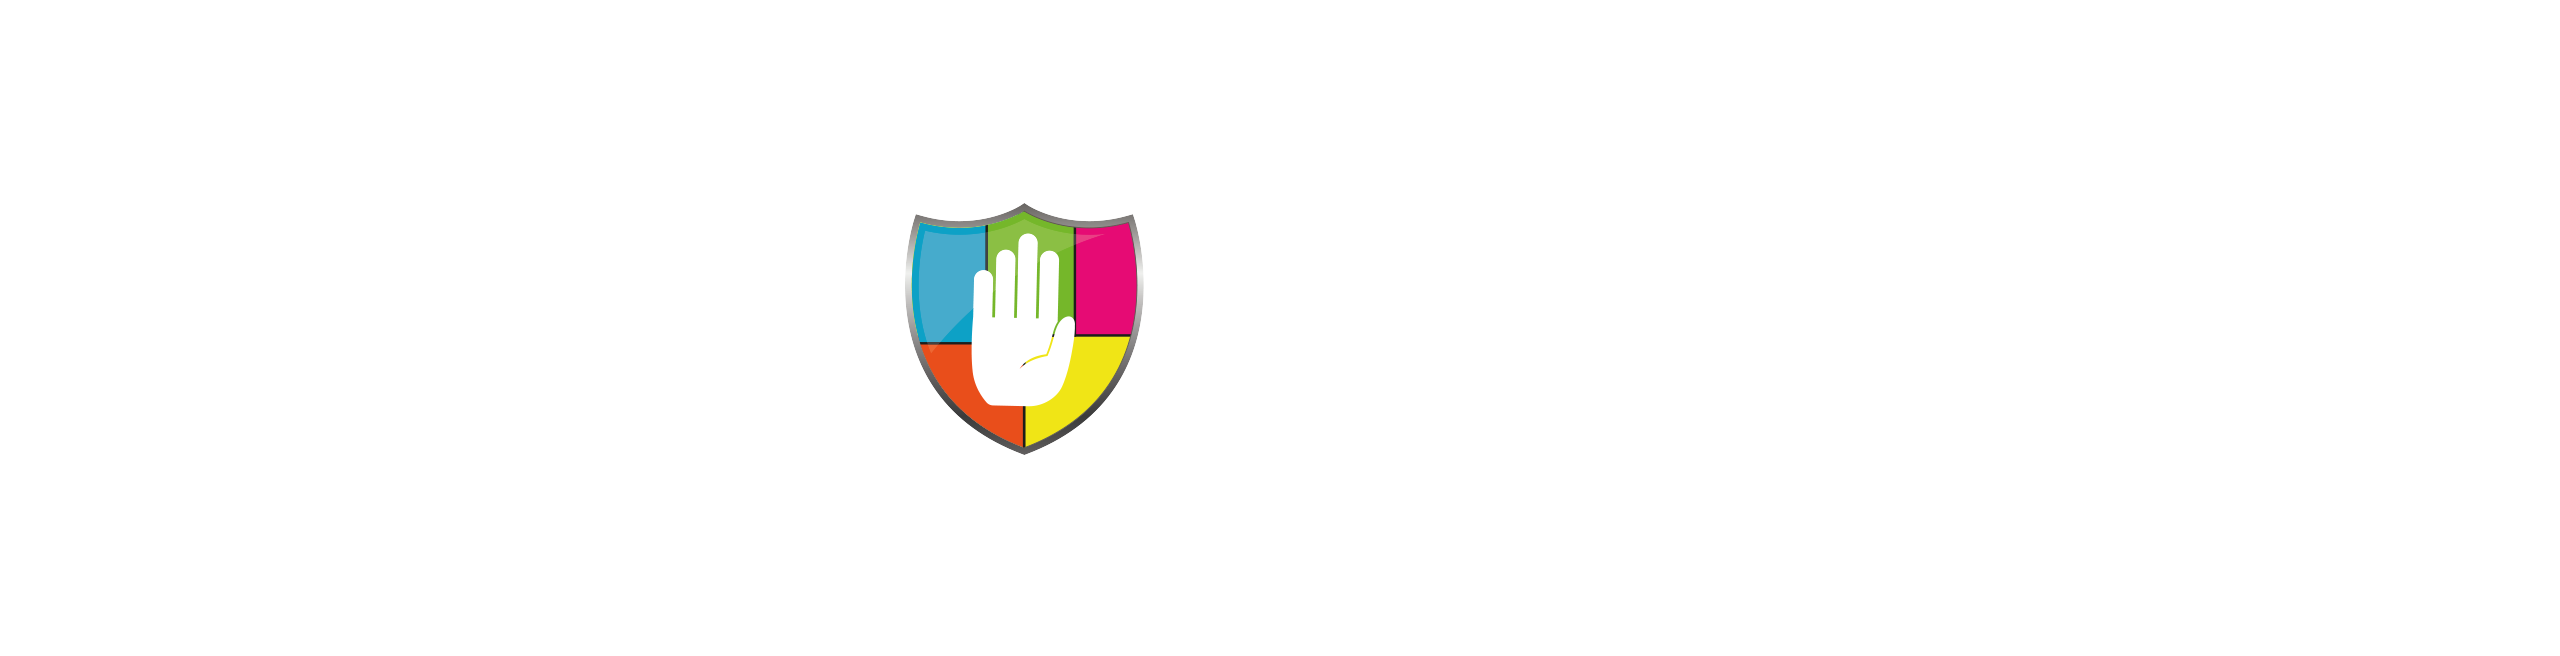 pskr-slider-logo